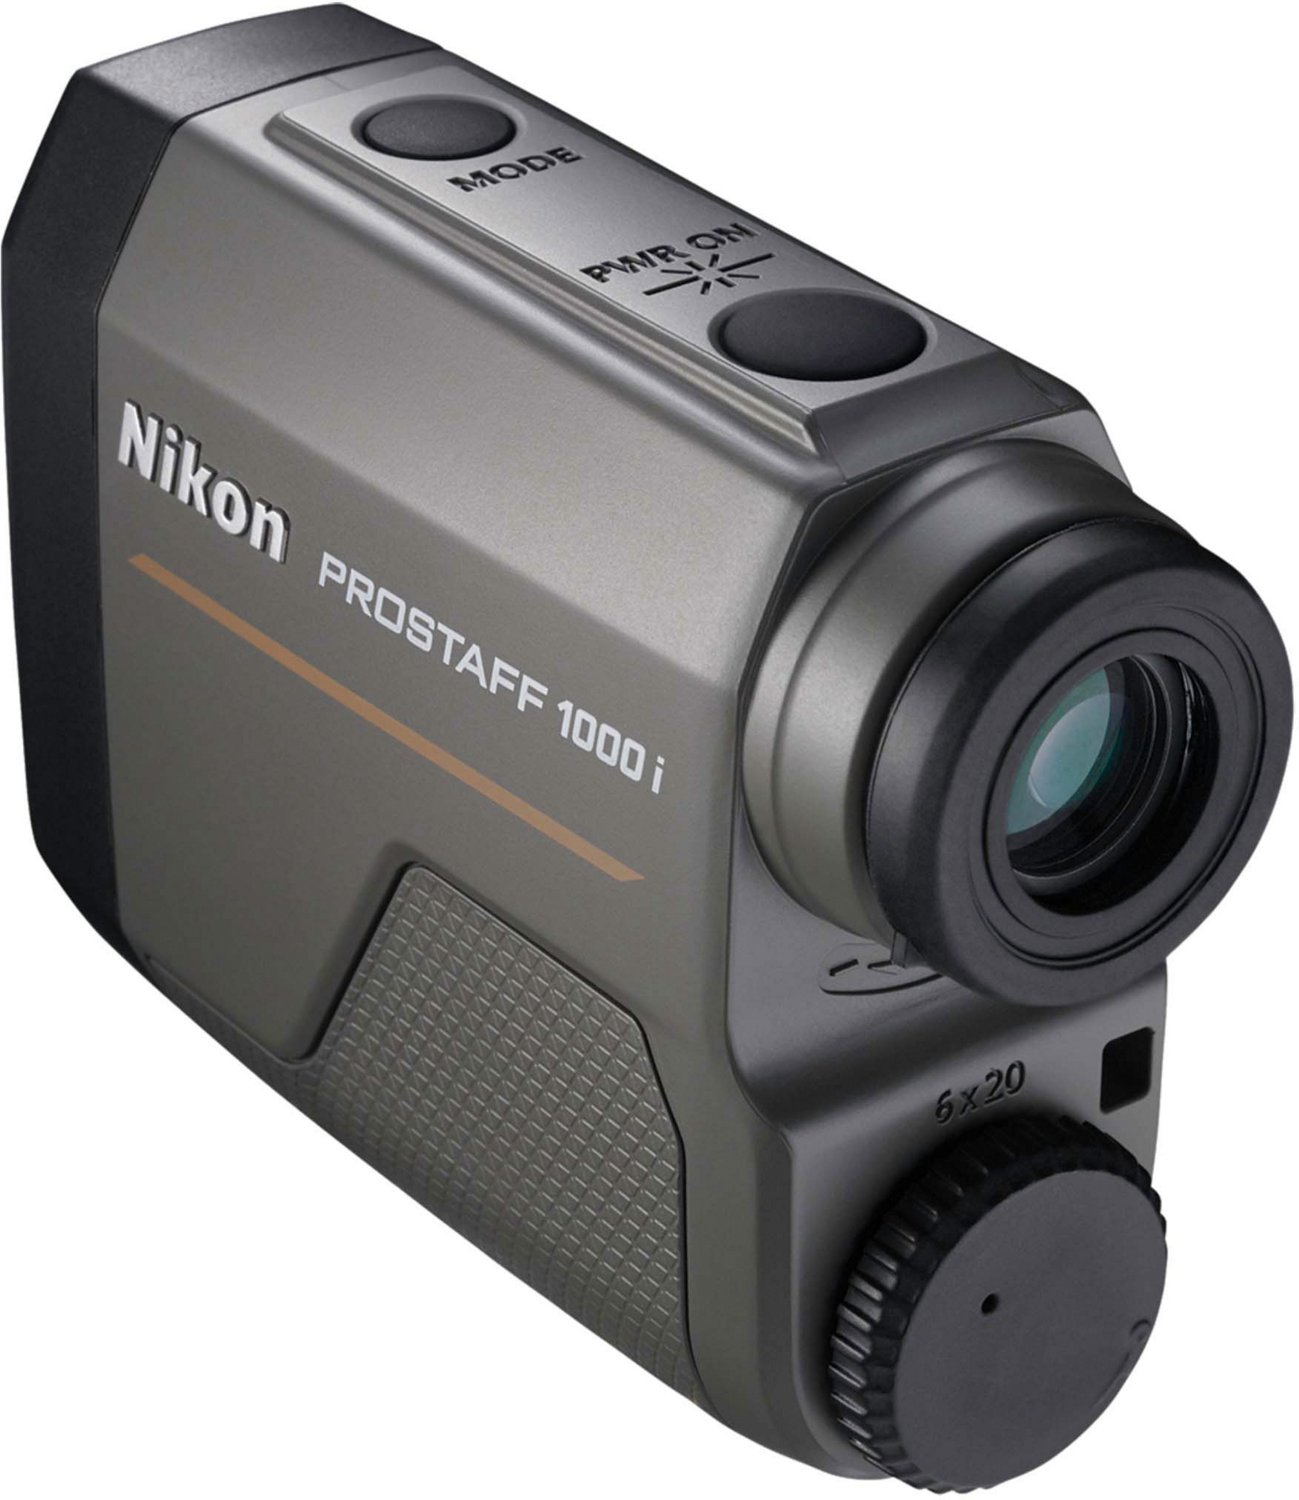 Nikon PROSTAFF 1000i 6 x 20 Laser Rangefinder                                                                                    - view number 5